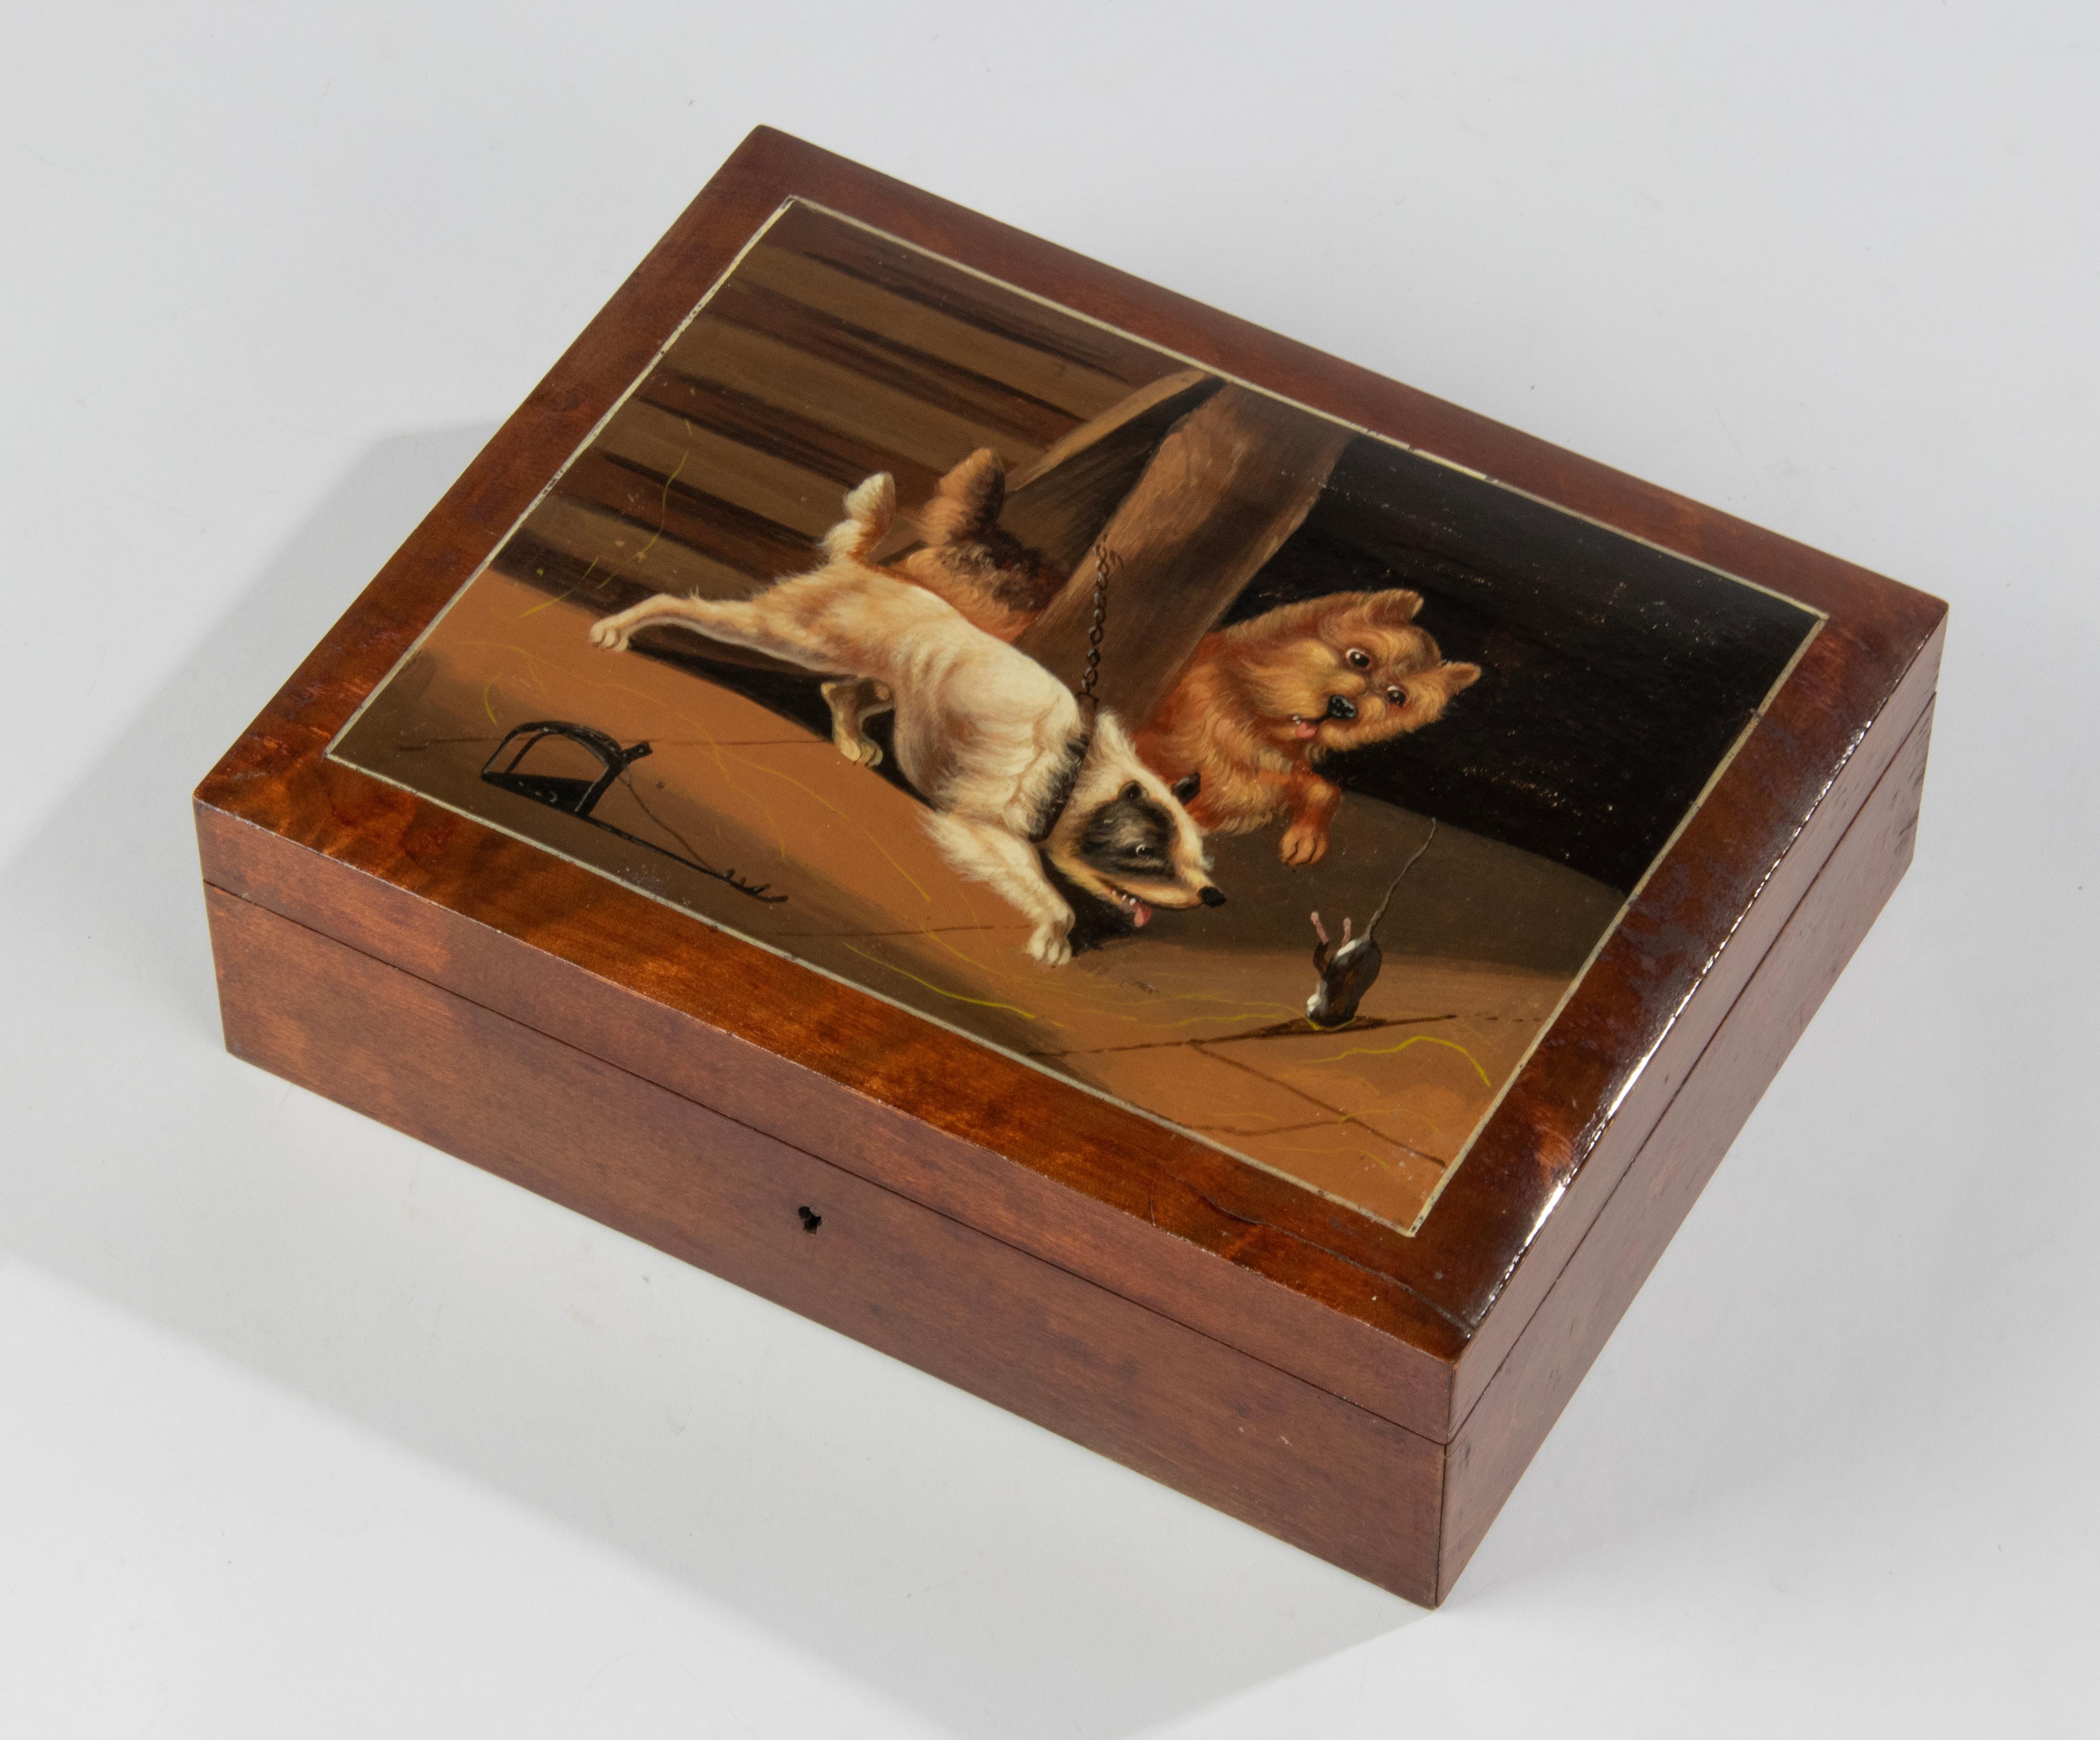 Une belle boîte en bois ancienne. Le couvercle est peint à la main avec une représentation joyeuse de deux chiens qui essaient d'attraper une souris. 
La peinture est d'une couleur vive et raffinée. Il n'est pas signé.
La boîte est en bon état et